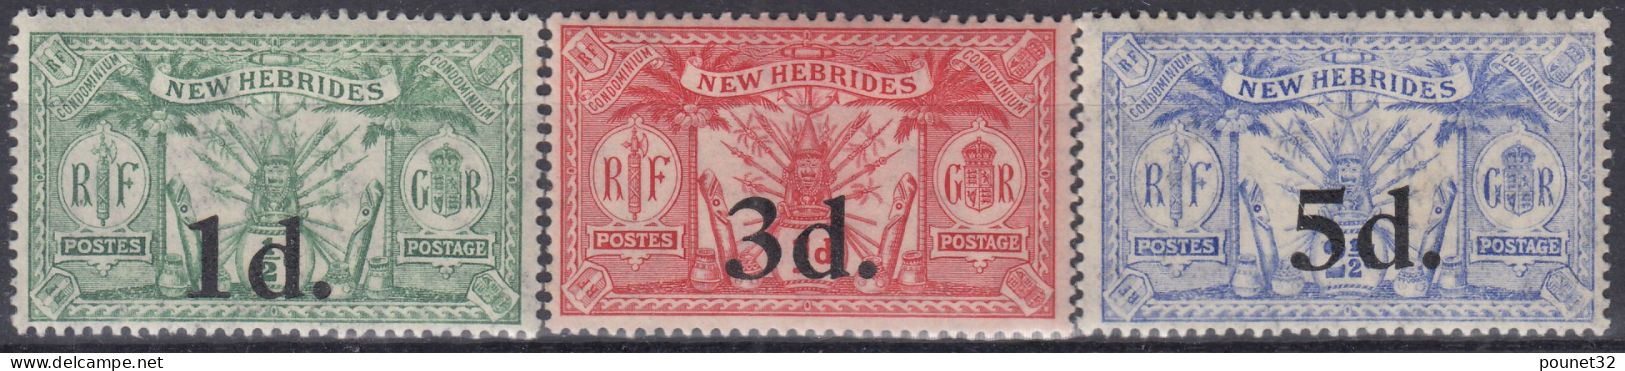 NEW HEBRIDES TIMBRES DE 1924 N° 77/79 NEUFS * GOMME AVEC CHARNIERE - TRES FRAIS - Neufs